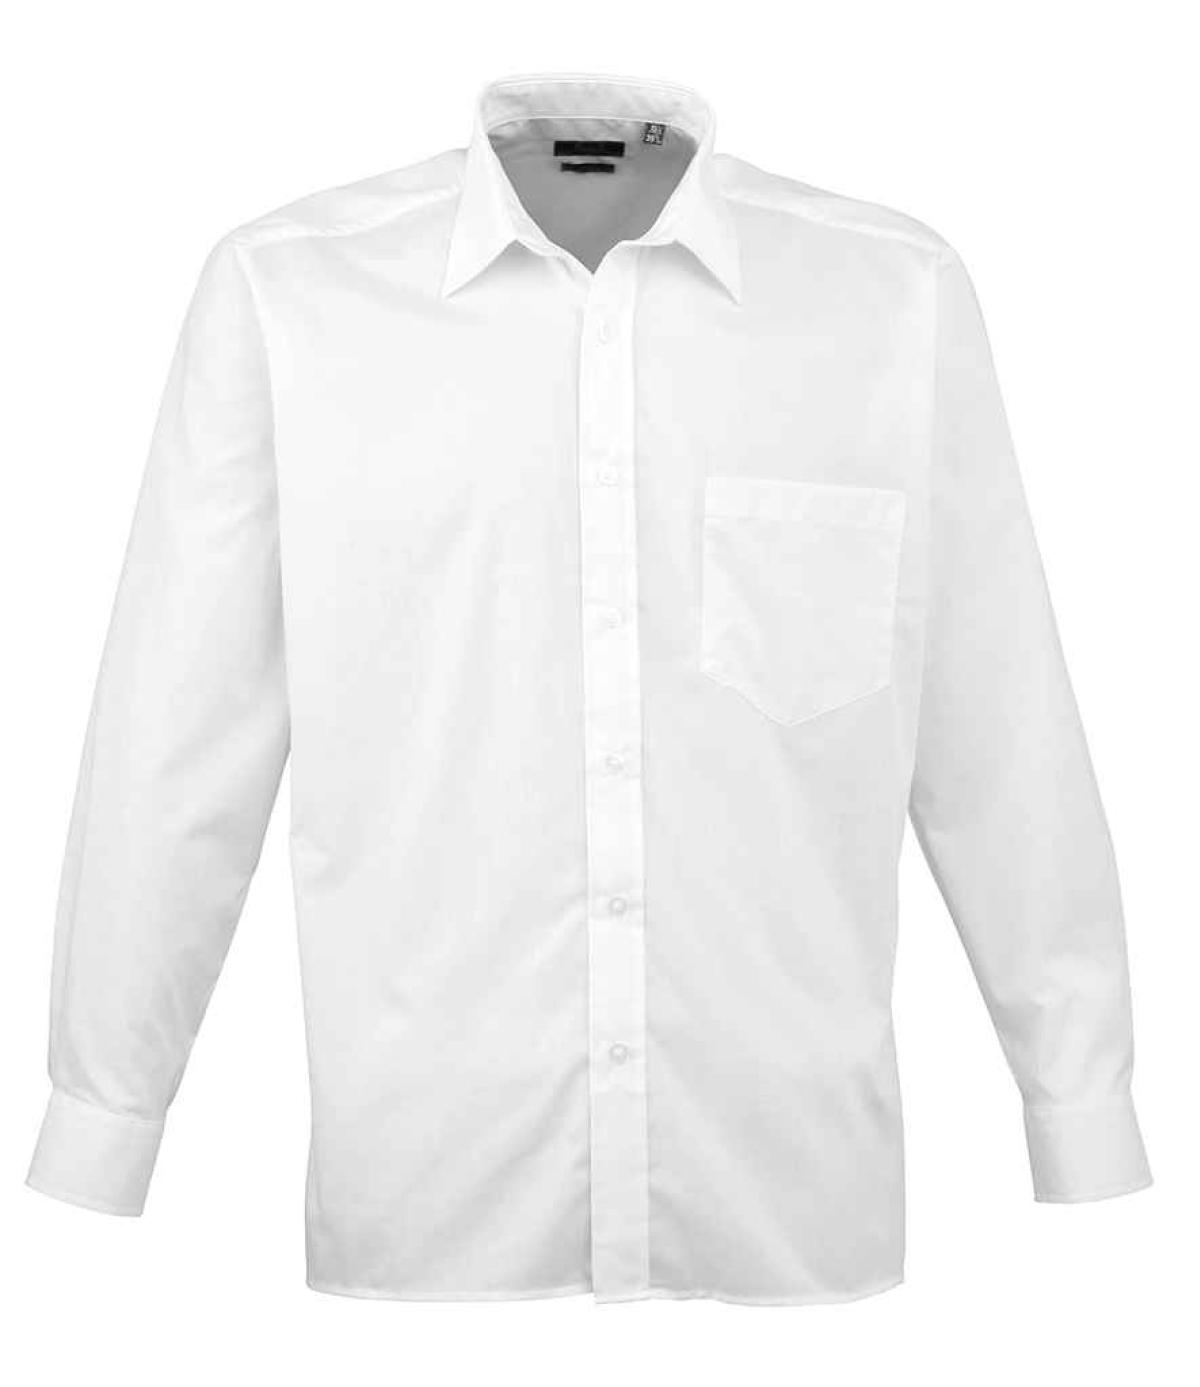 Premier Long Sleeve Poplin Shirt - White | Order Uniform UK Ltd